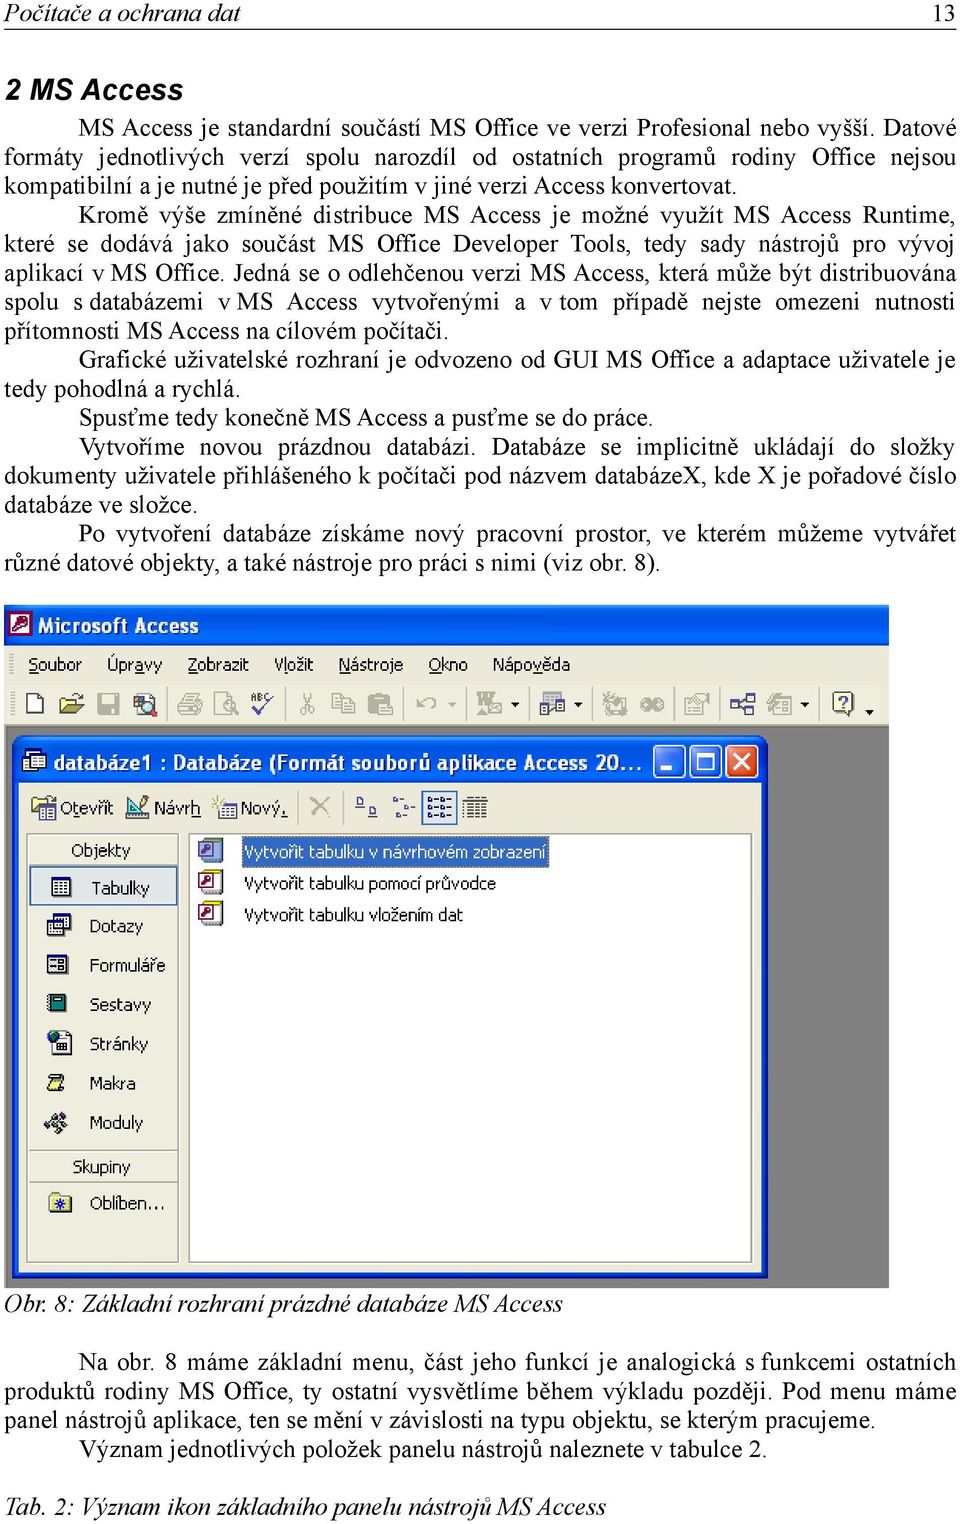 Kromě výše zmíněné distribuce MS Access je možné využít MS Access Runtime, které se dodává jako součást MS Office Developer Tools, tedy sady nástrojů pro vývoj aplikací v MS Office.